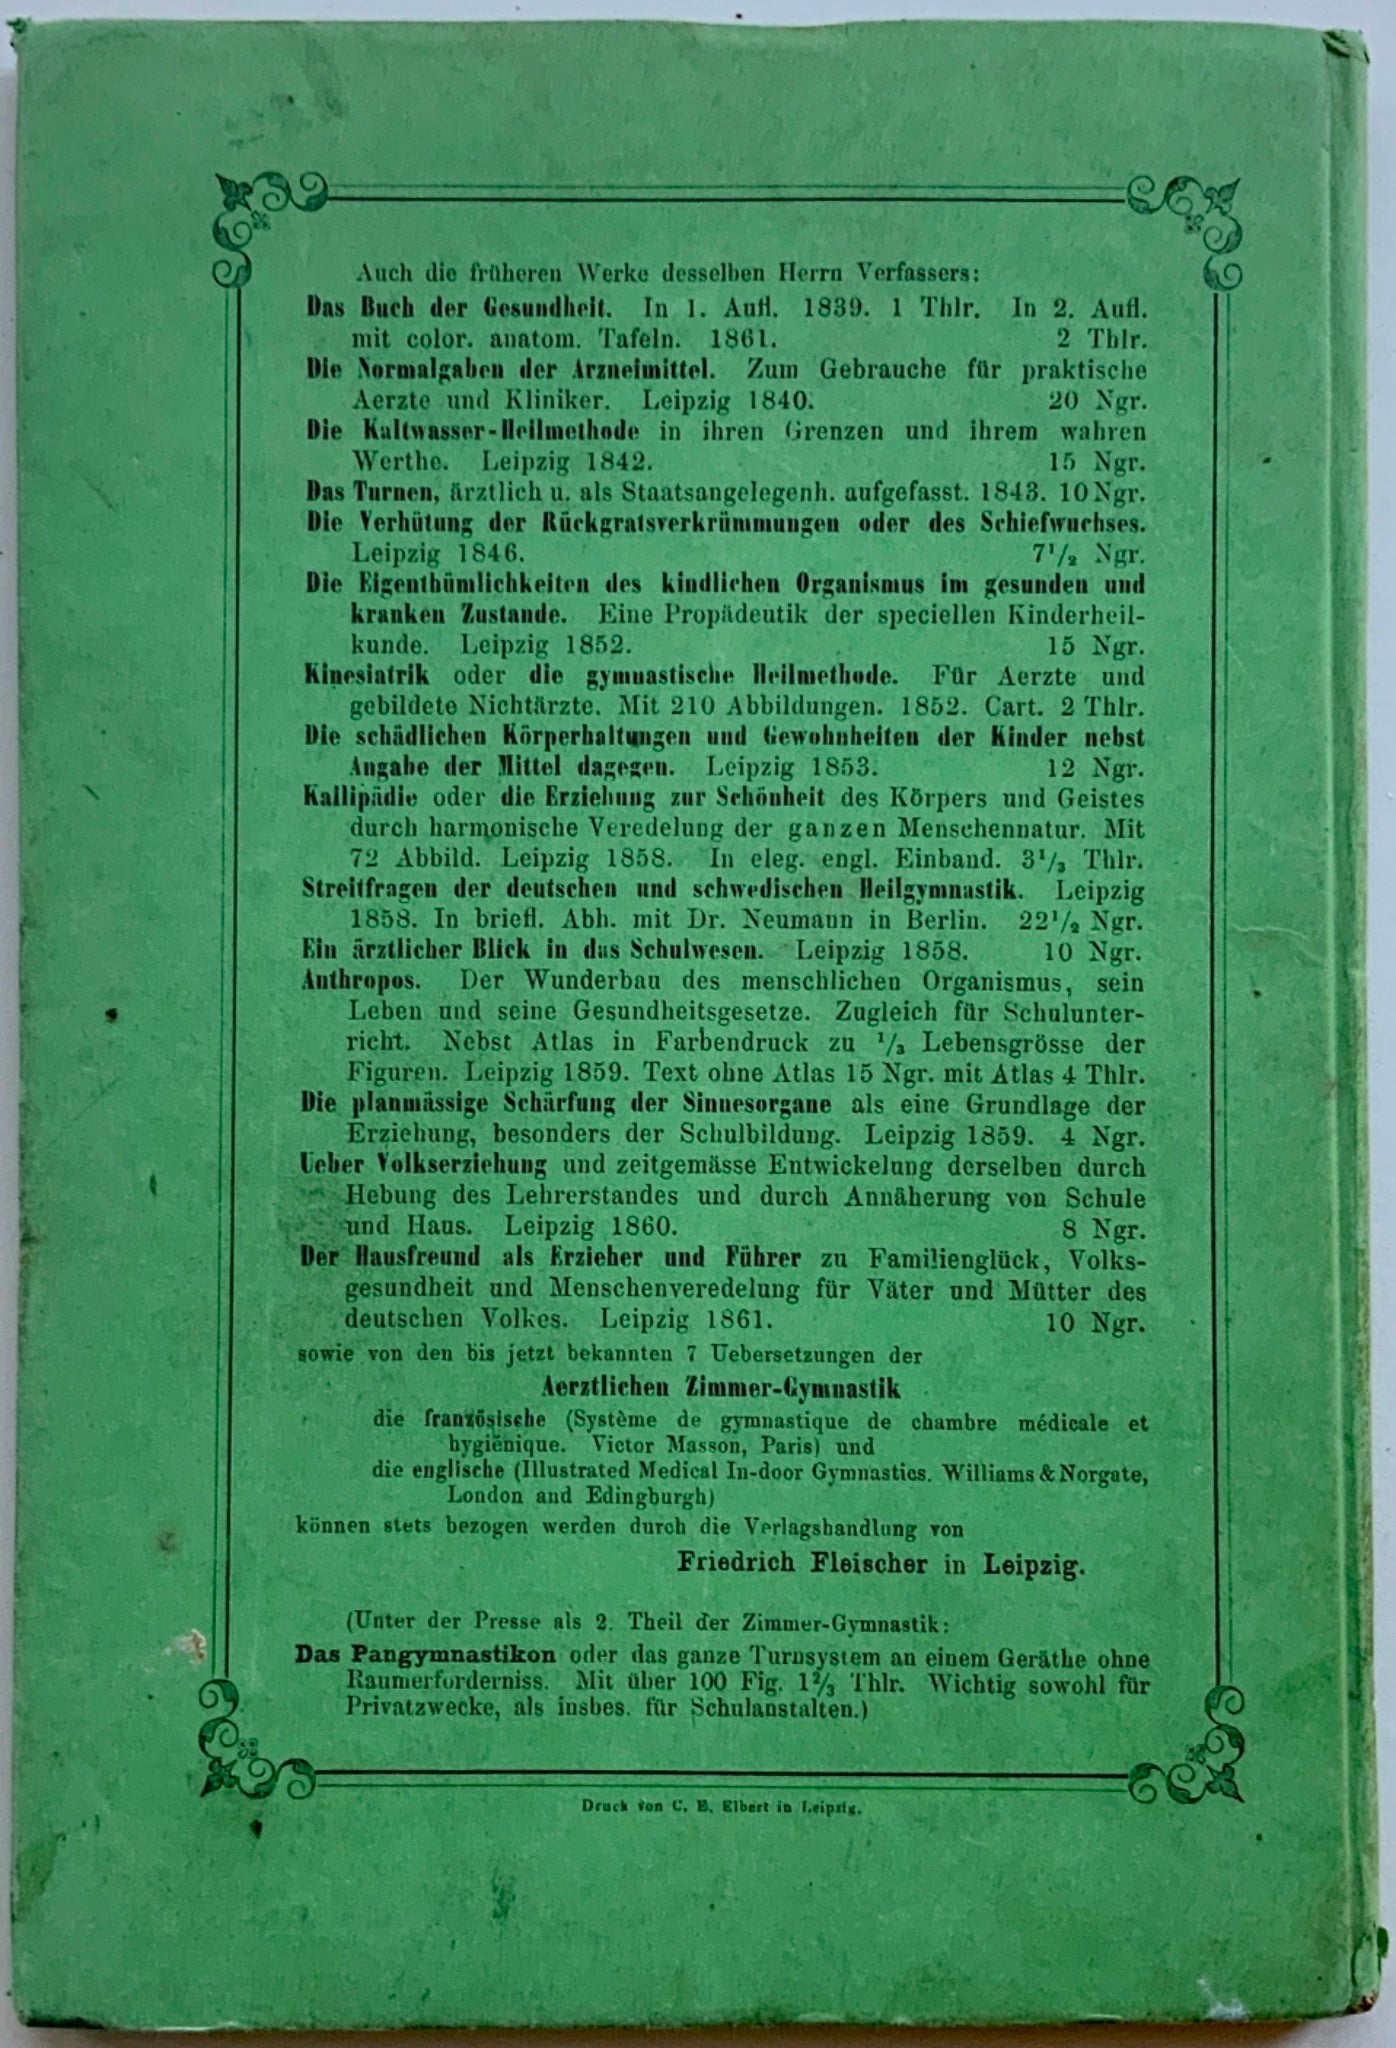 1862 GYMNASTICS Schreber Aerztliche Zimmer Gymnastik - Classic edition - Book, Medicine, Sport